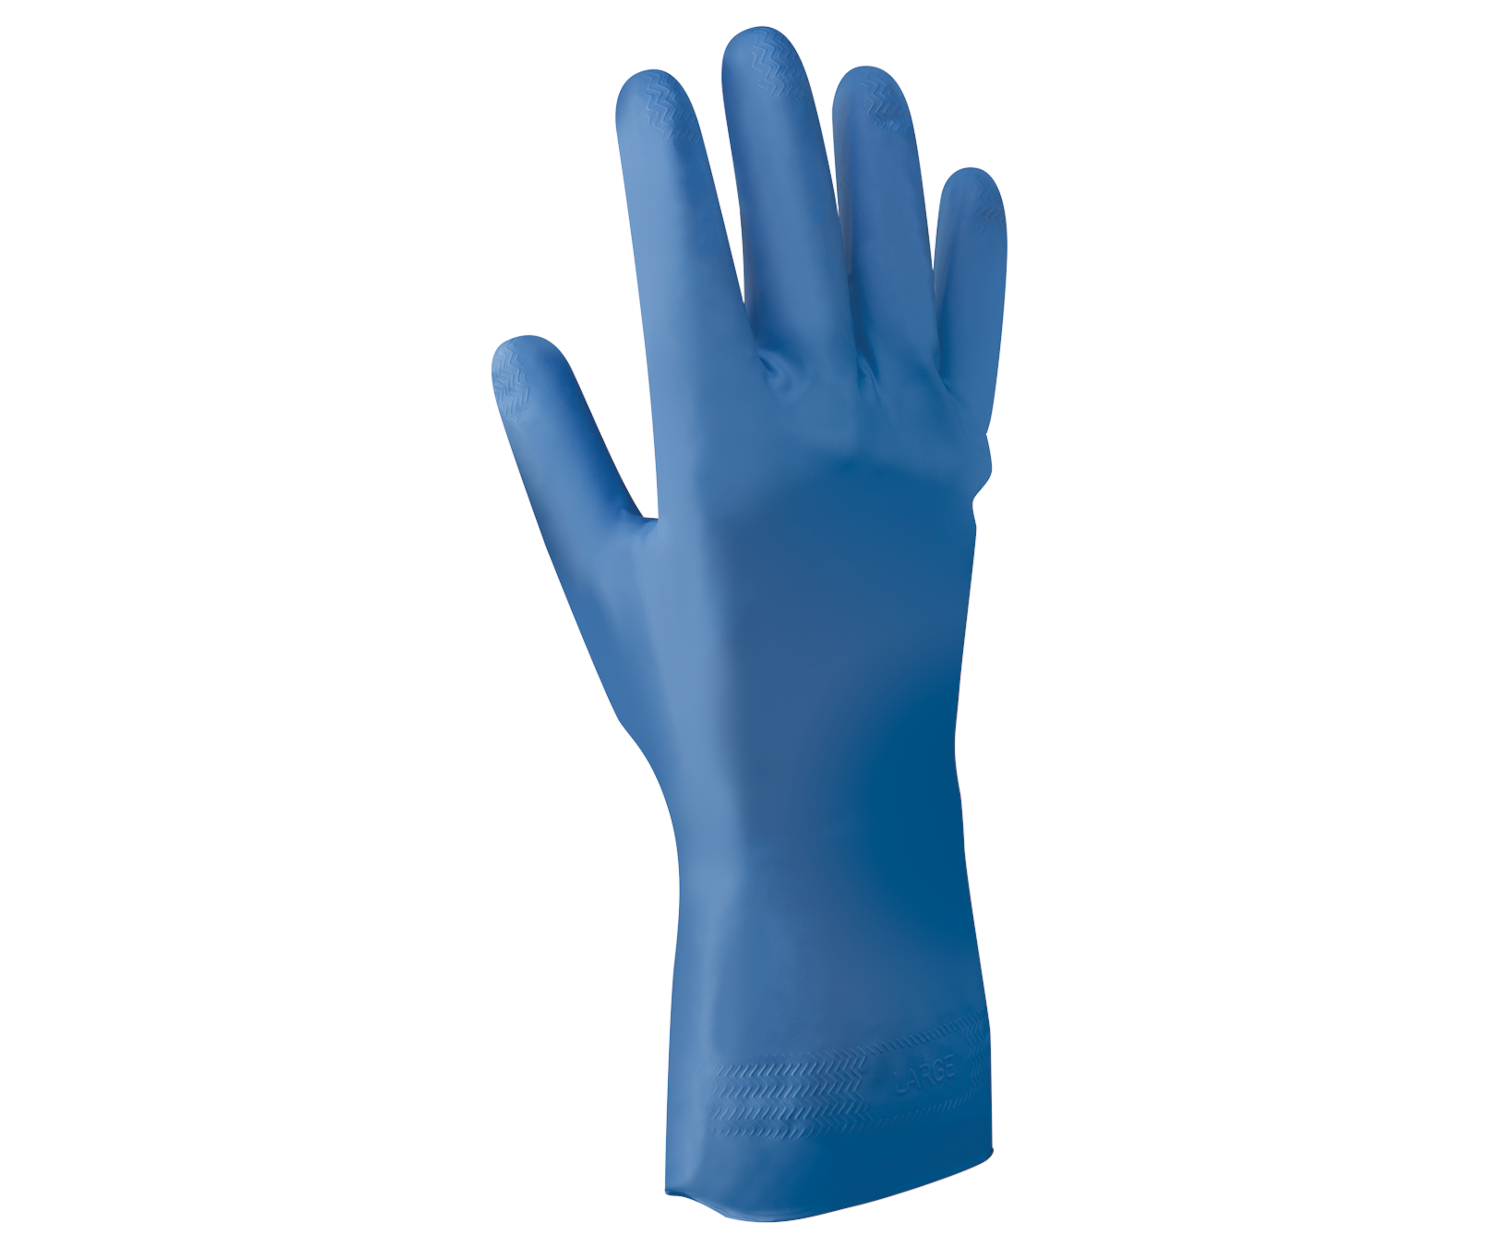 Chemikalienschutz-Handschuh SHOWA 707D